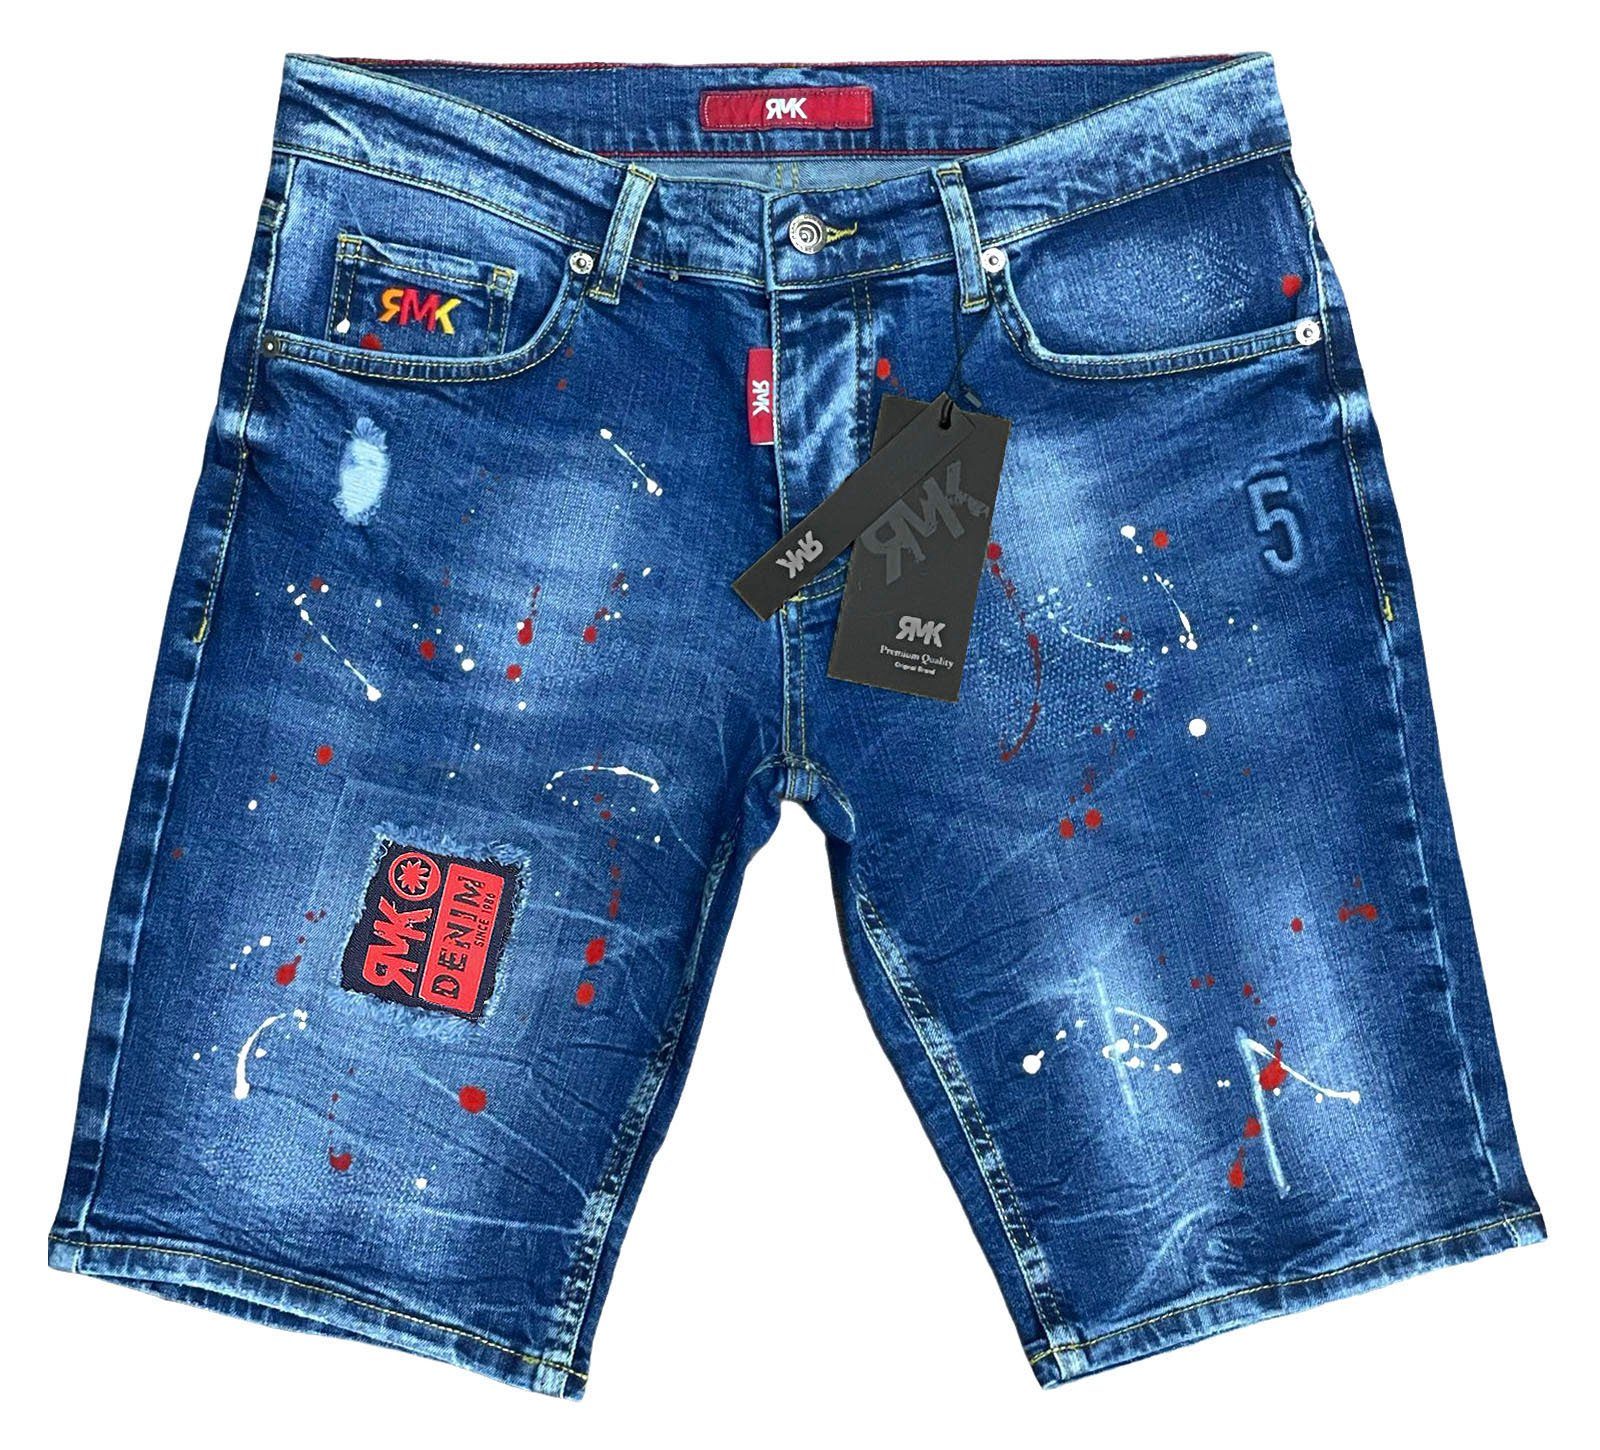 Jeans mit RMK Jeansshorts short 5 Pocket Blue Farbspritzern